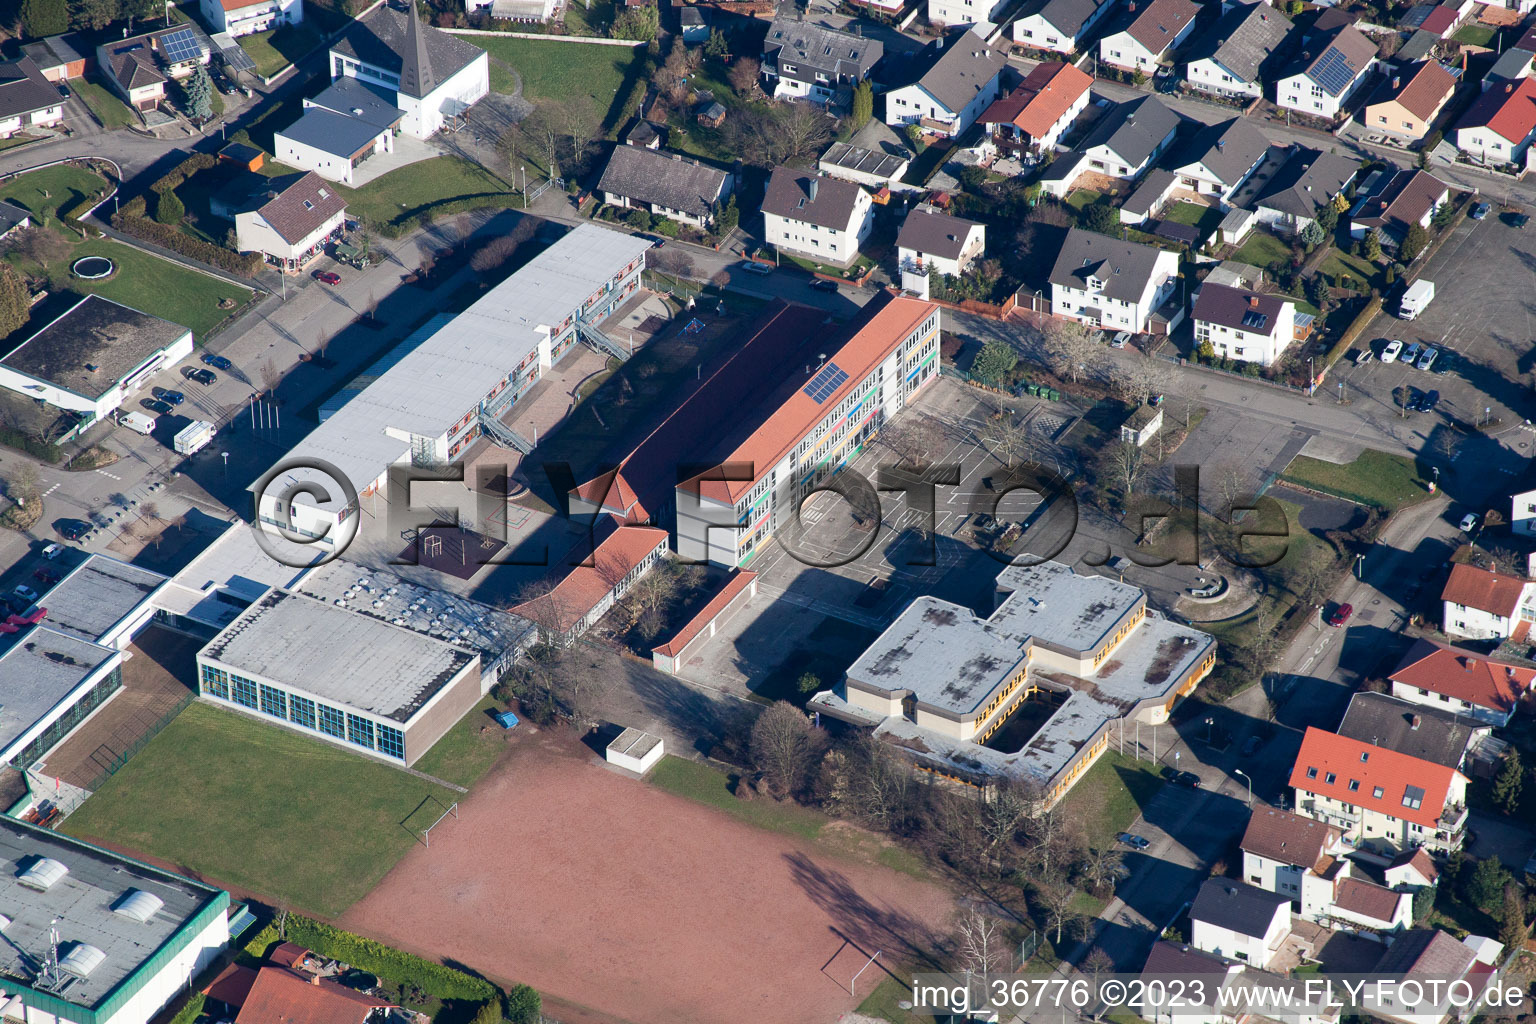 Lingenfeld dans le département Rhénanie-Palatinat, Allemagne du point de vue du drone